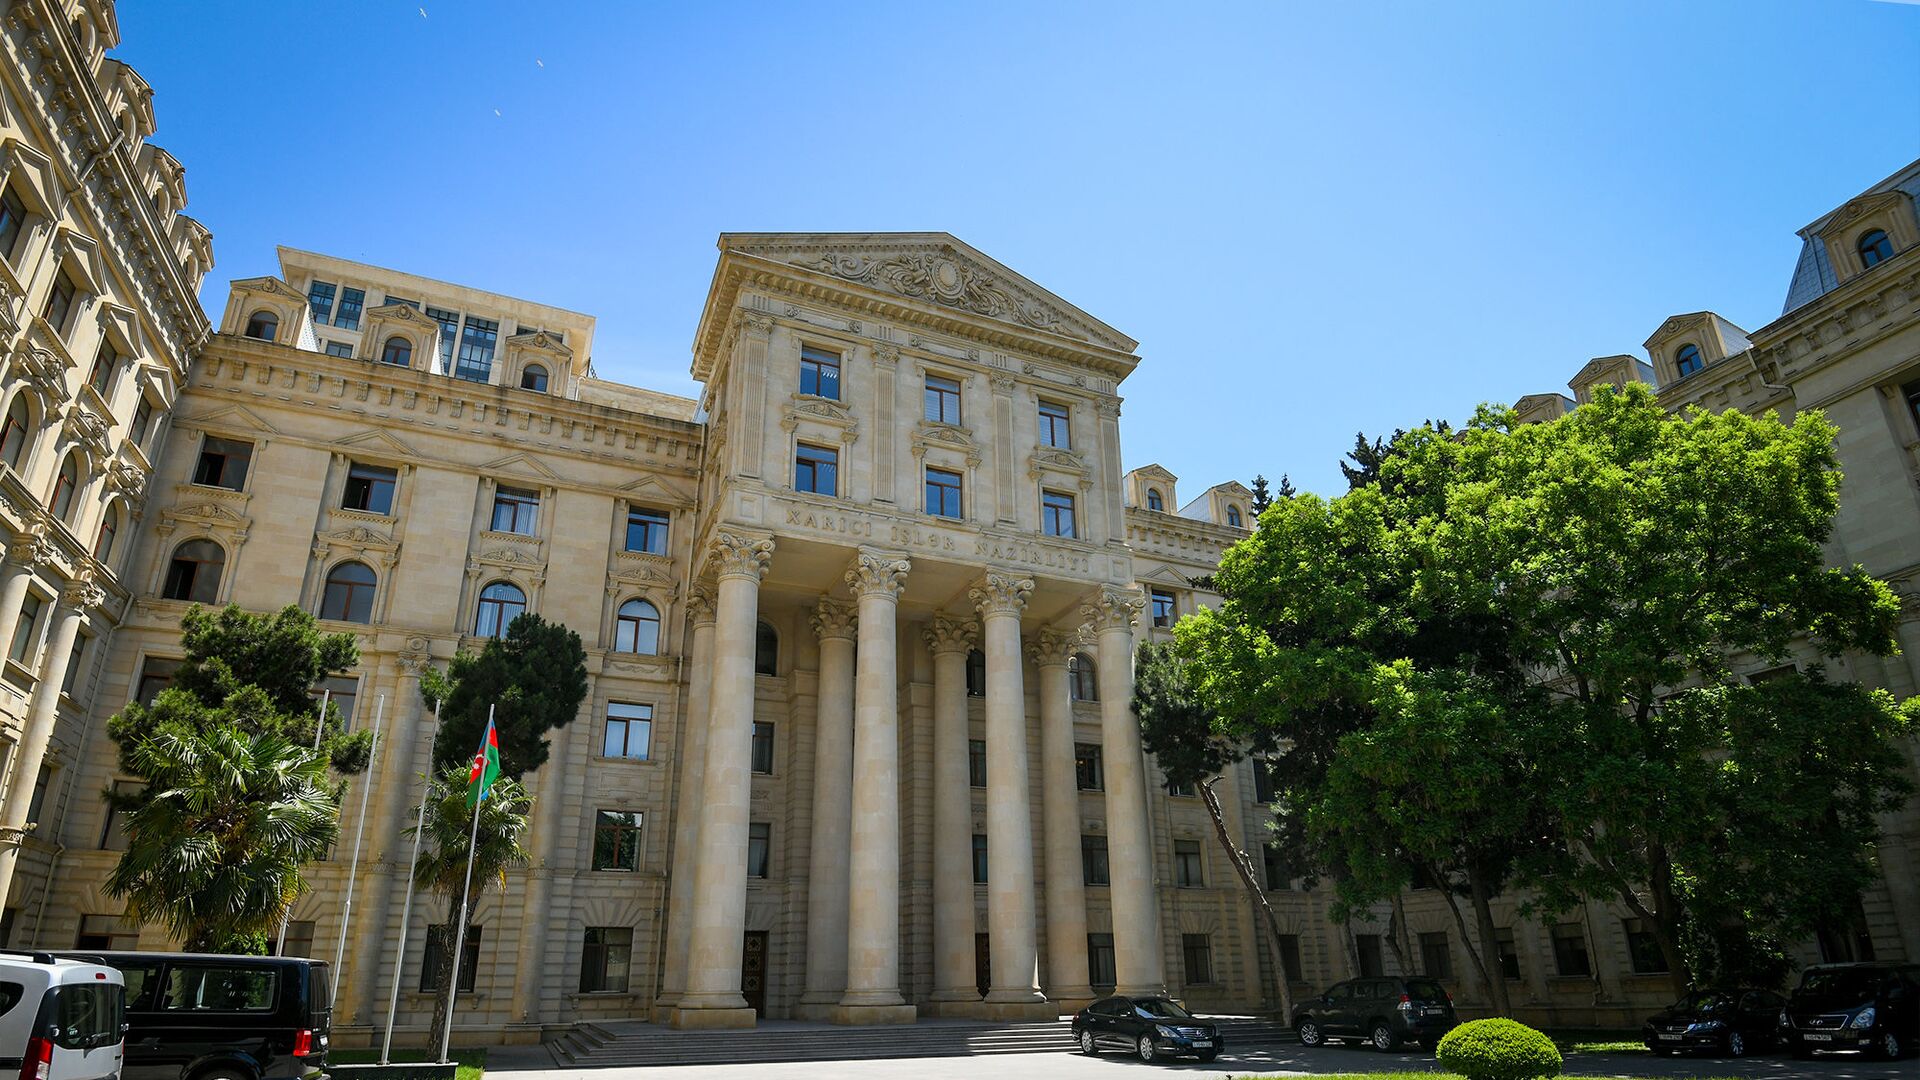 Ադրբեջանի ԱԳՆ-ն արձագանքել է ՀՀ սահմանը հատած Բաբիրովի դատավճռին՝ միջազգային հանրությանը կոչ անելով ճնշում գործադրել Հայաստանի վրա